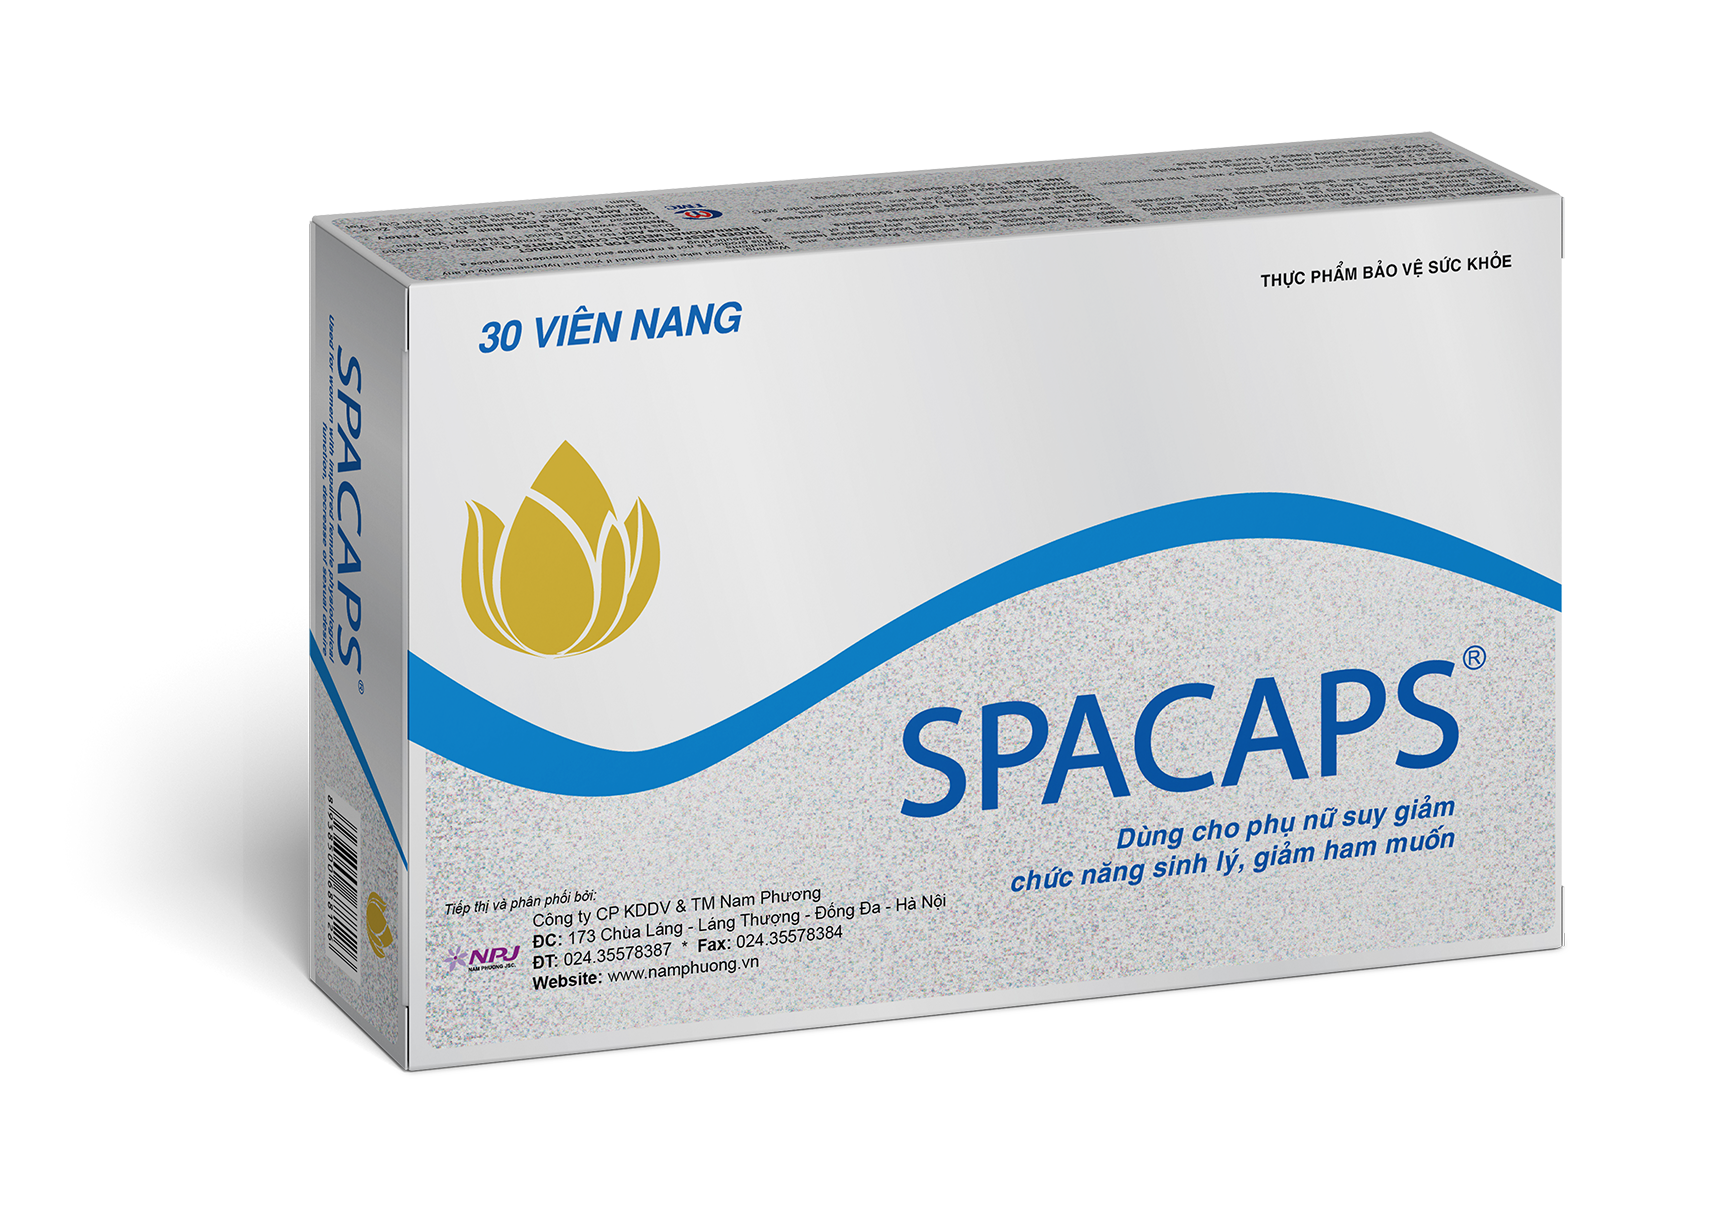 Spacaps hỗ trợ cải thiện tình trạng bốc hỏa đổ mồ hôi đêm